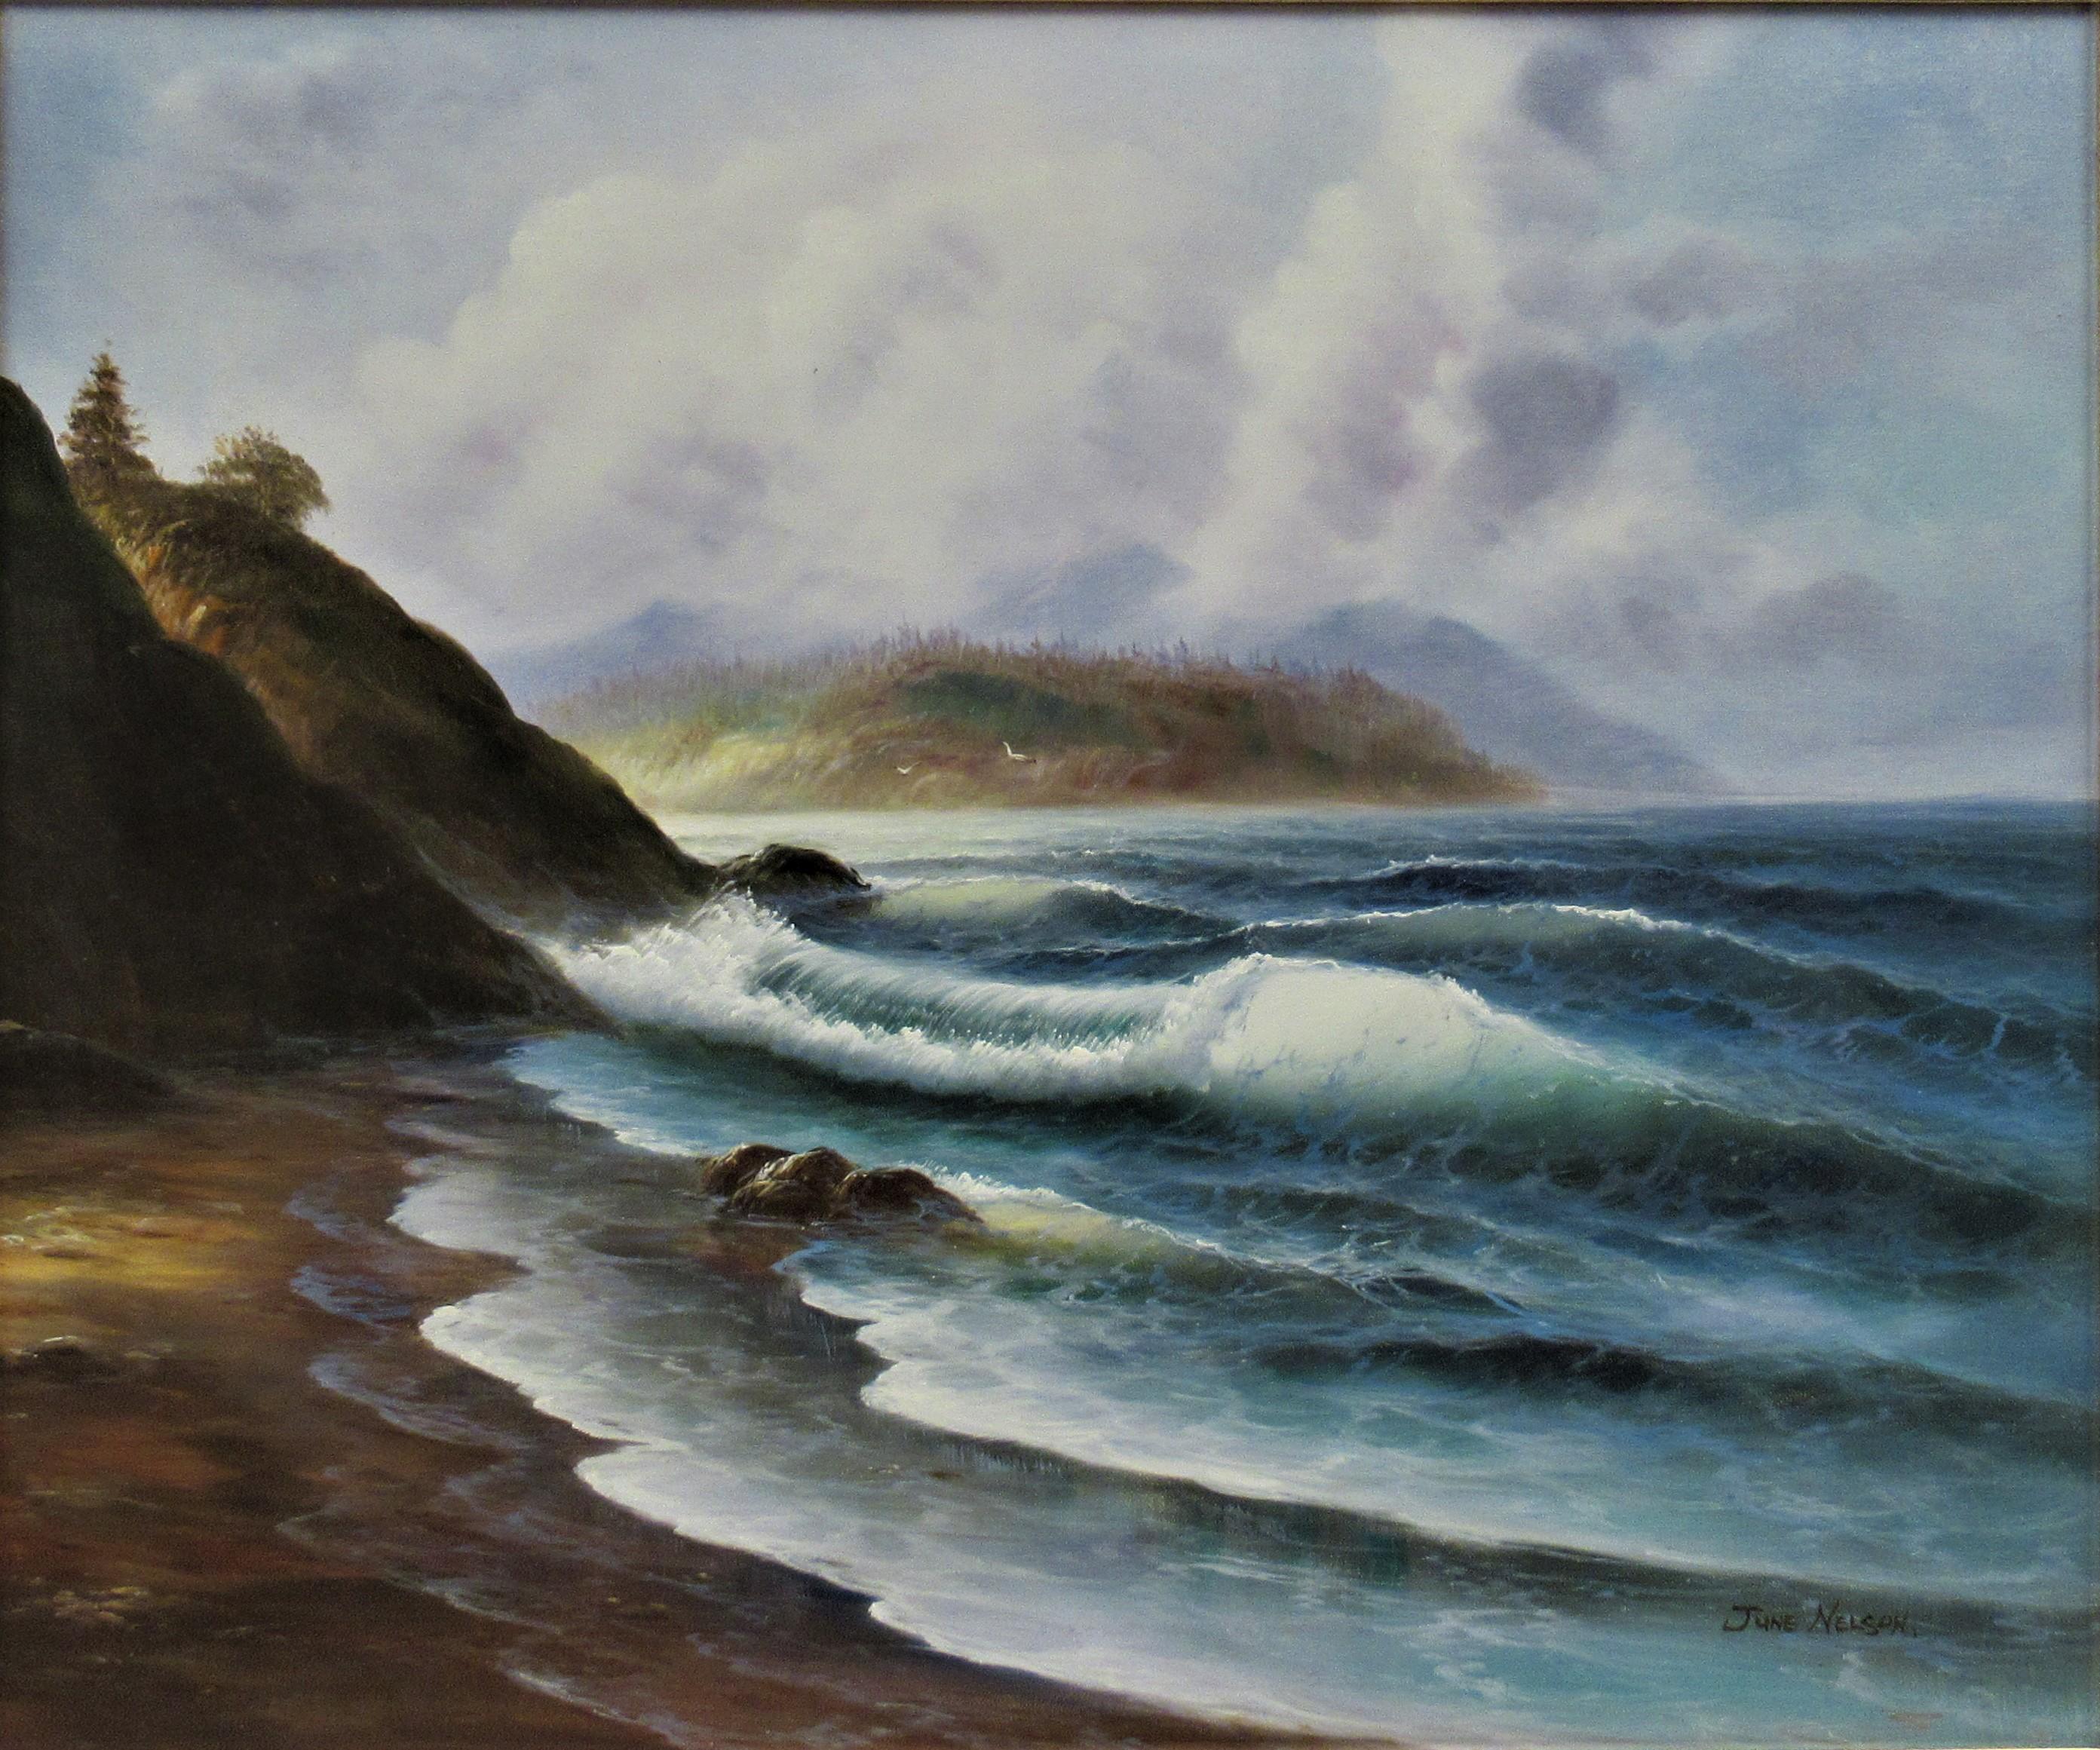 Meereslandschaft – Painting von june nelson